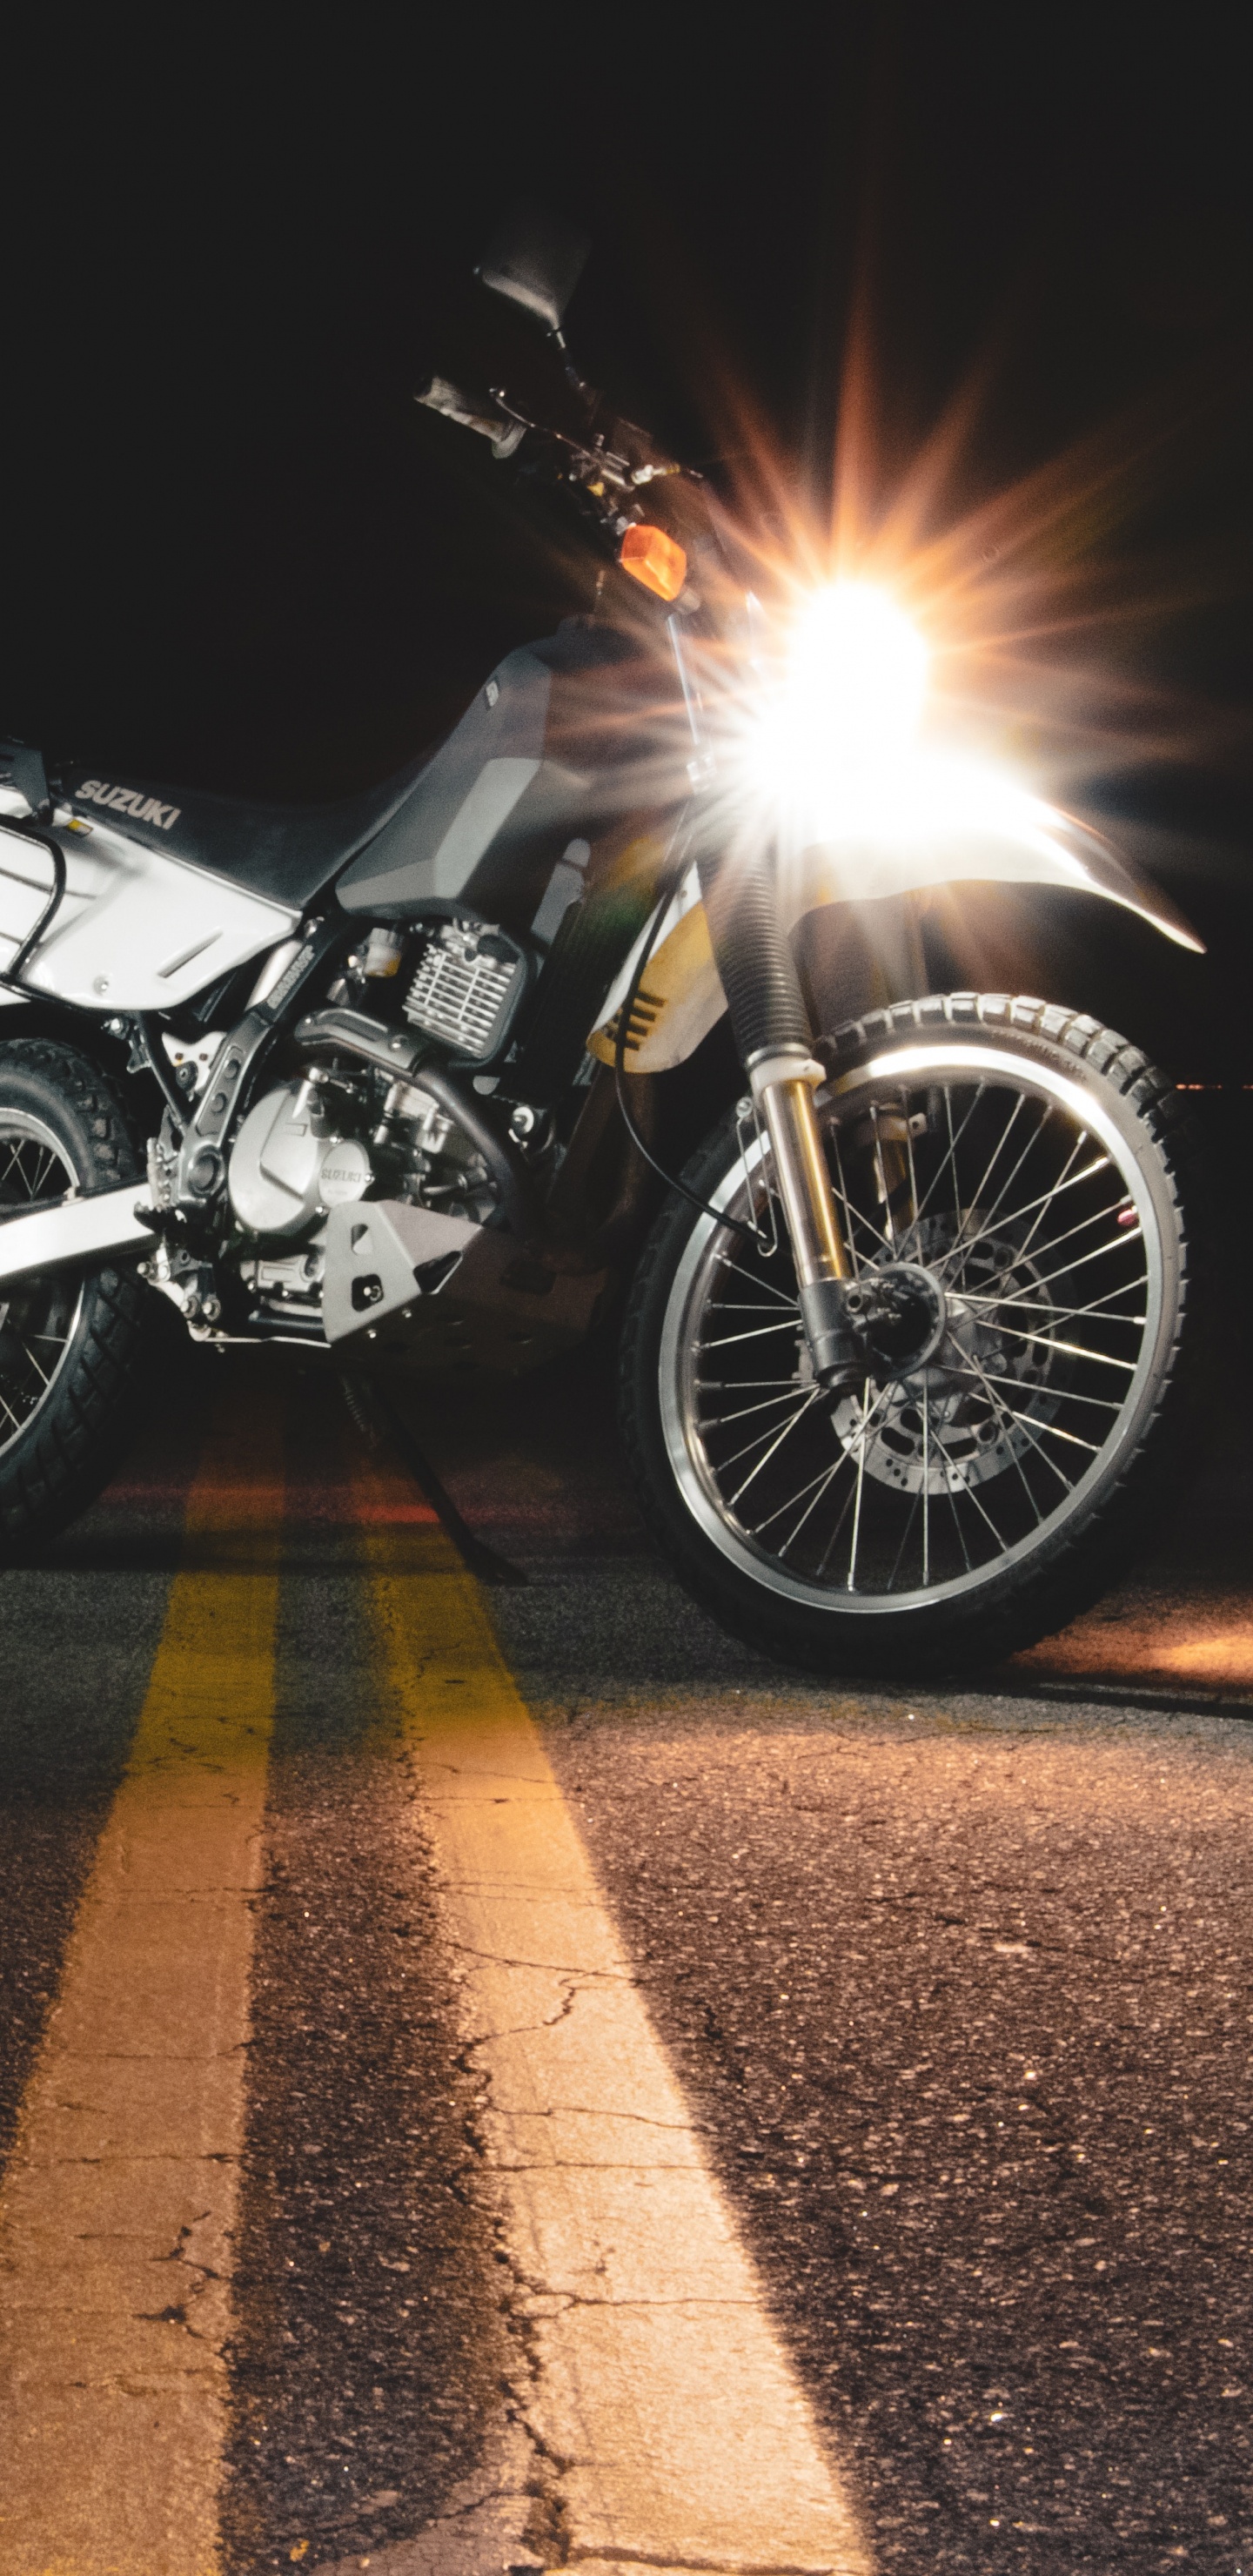 Motocicleta Negra y Plateada en la Carretera Durante la Noche. Wallpaper in 1440x2960 Resolution